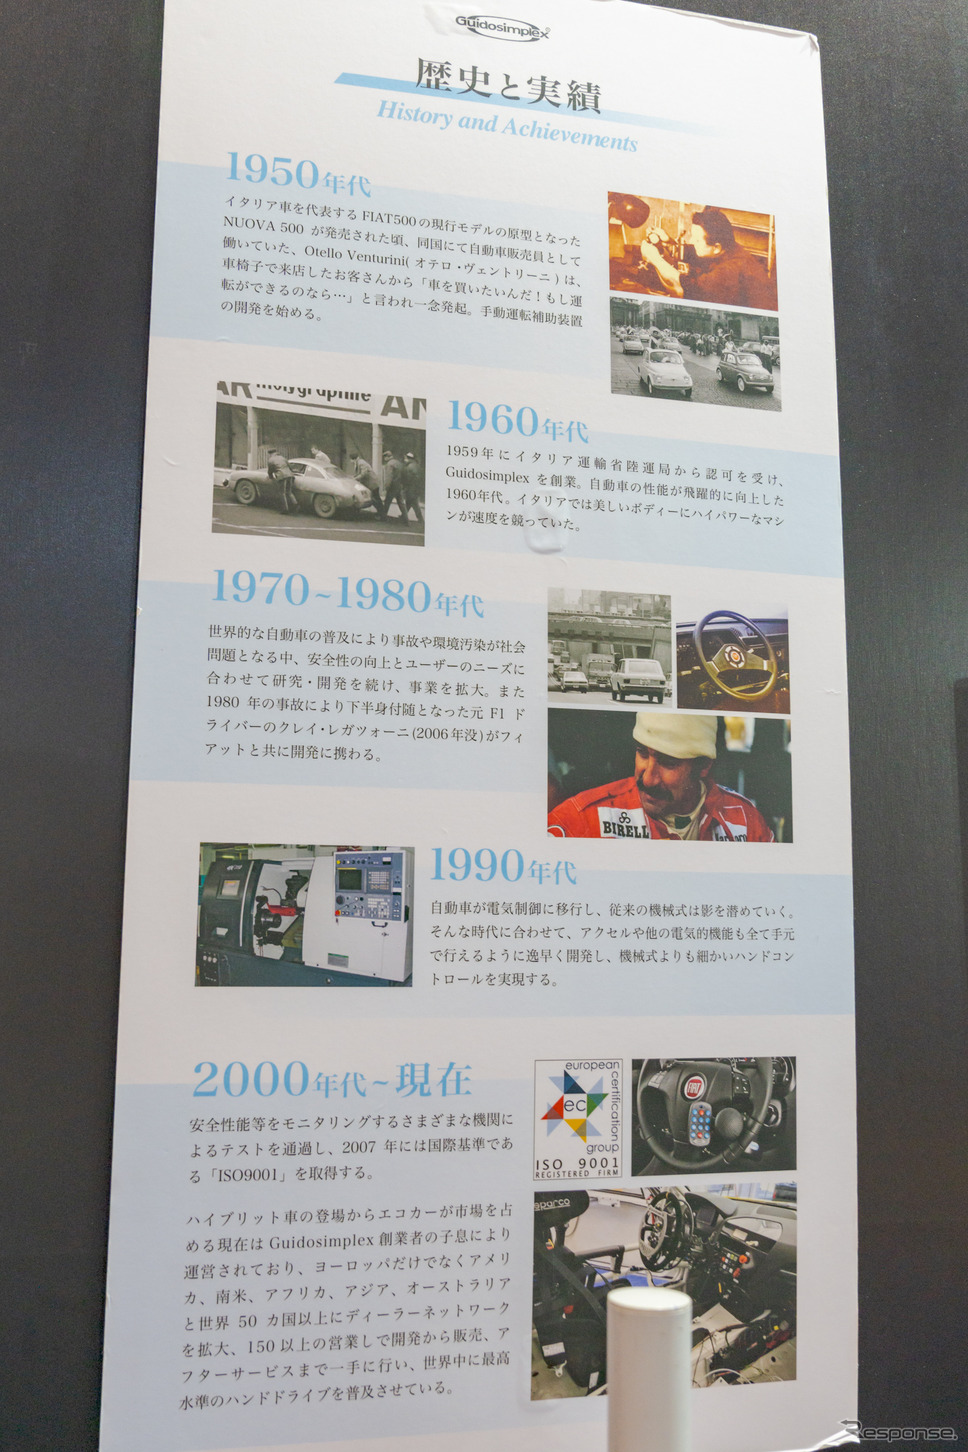 Guidosimplexの歴史と実績のポスターも展示されていた。《写真撮影 関口敬文》